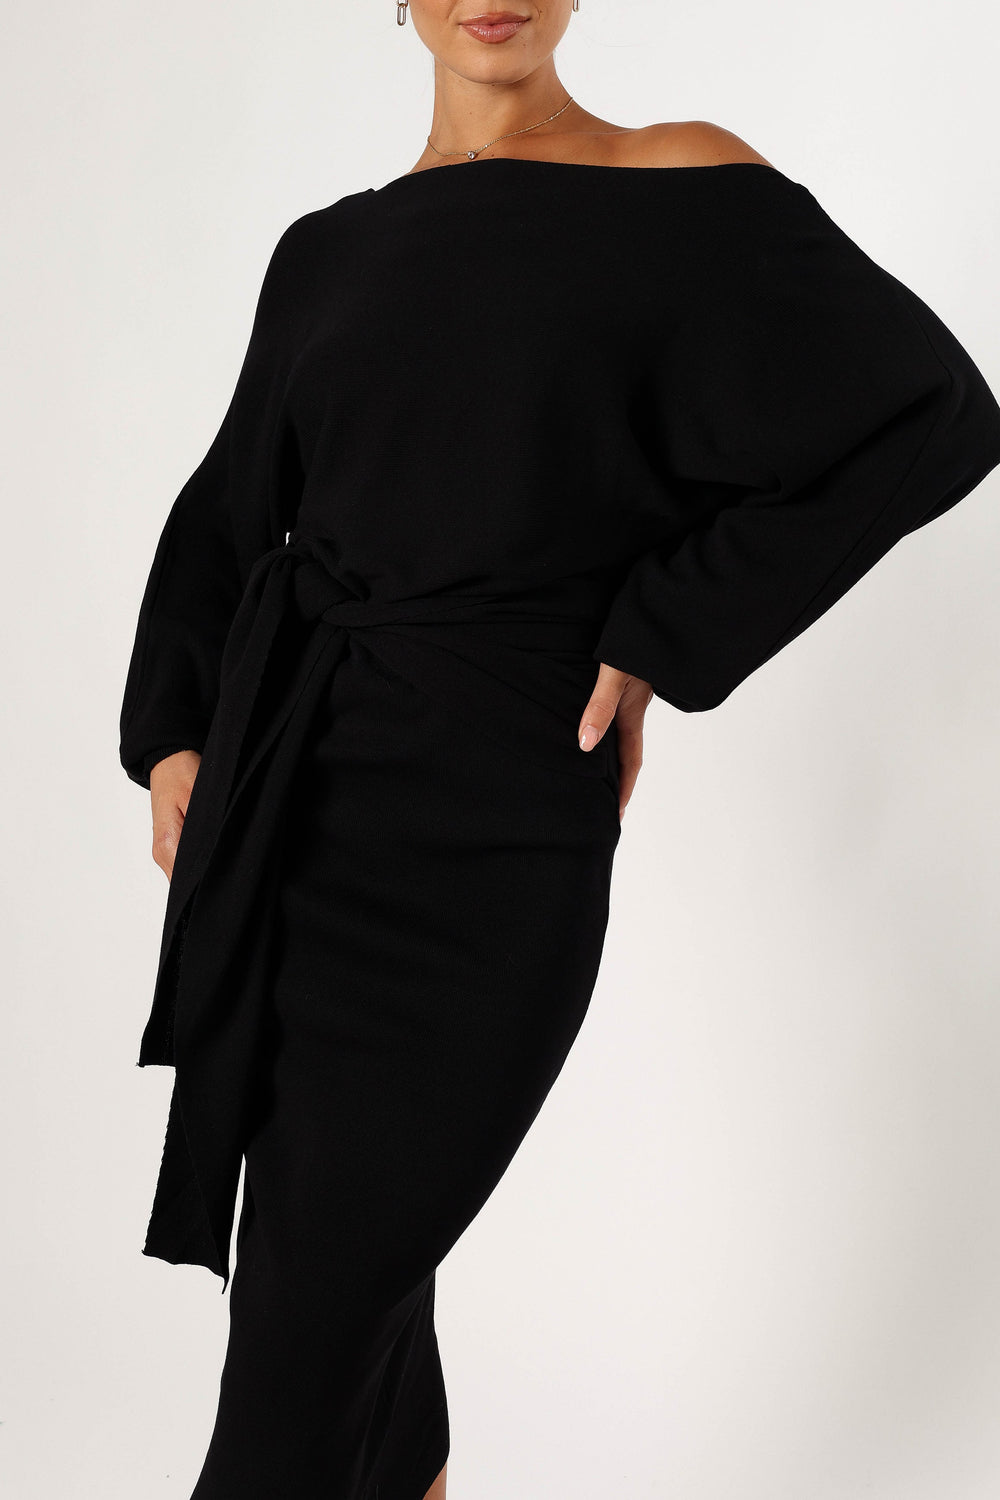 Prancer Off Shoulder Midi Dress - Black - Petal & Pup USA